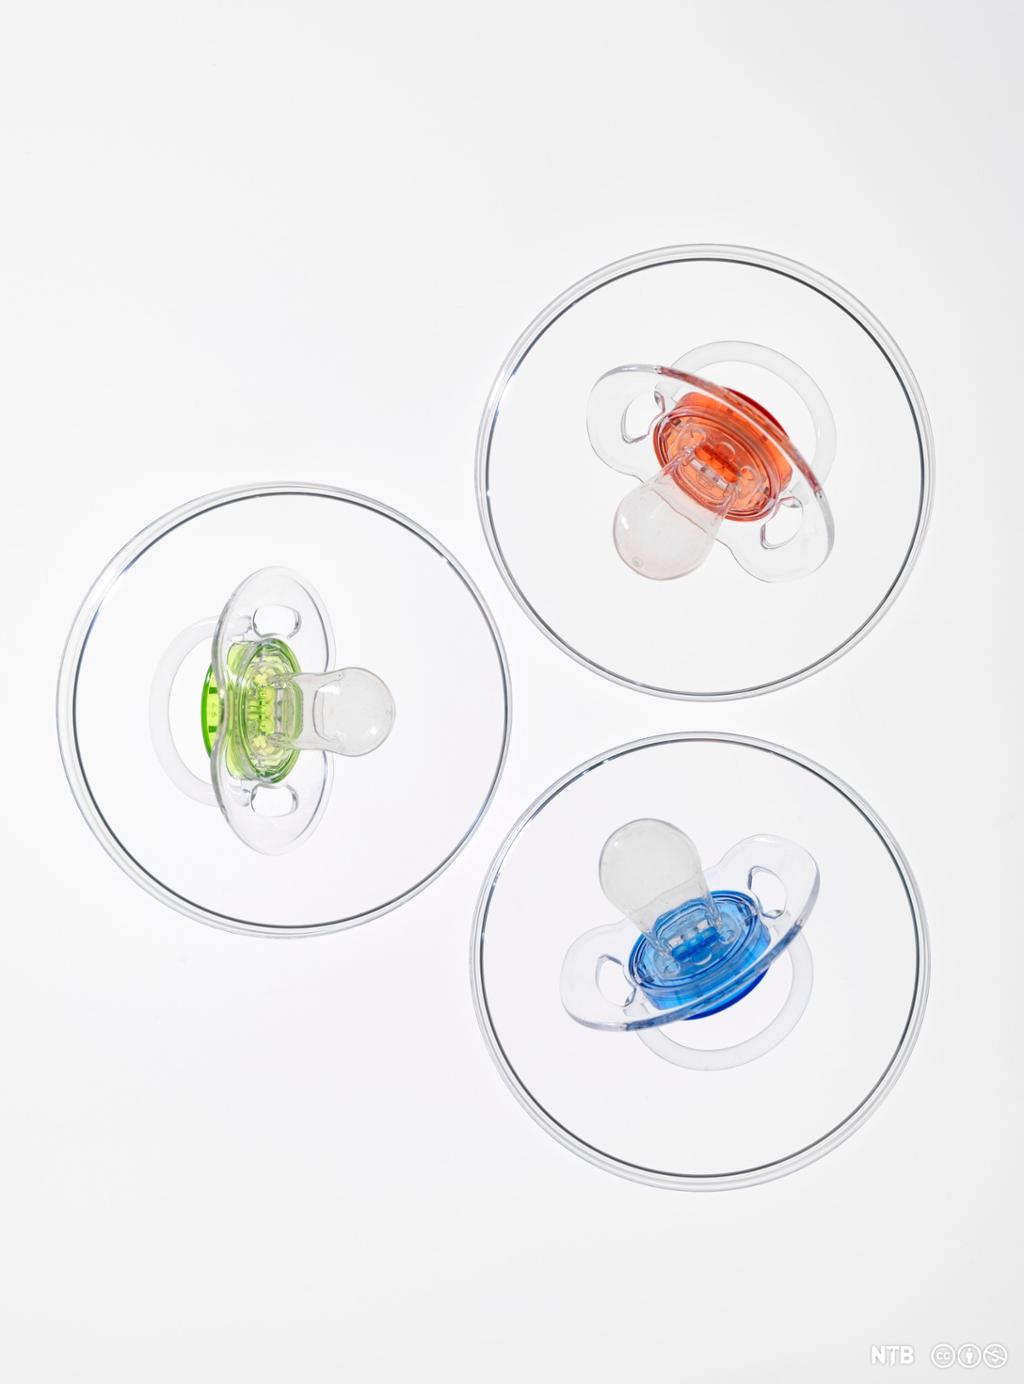 Tre petriskåler som hver inneholder en smokk i ulik farge: en rød, en blå og en grønn. Foto.